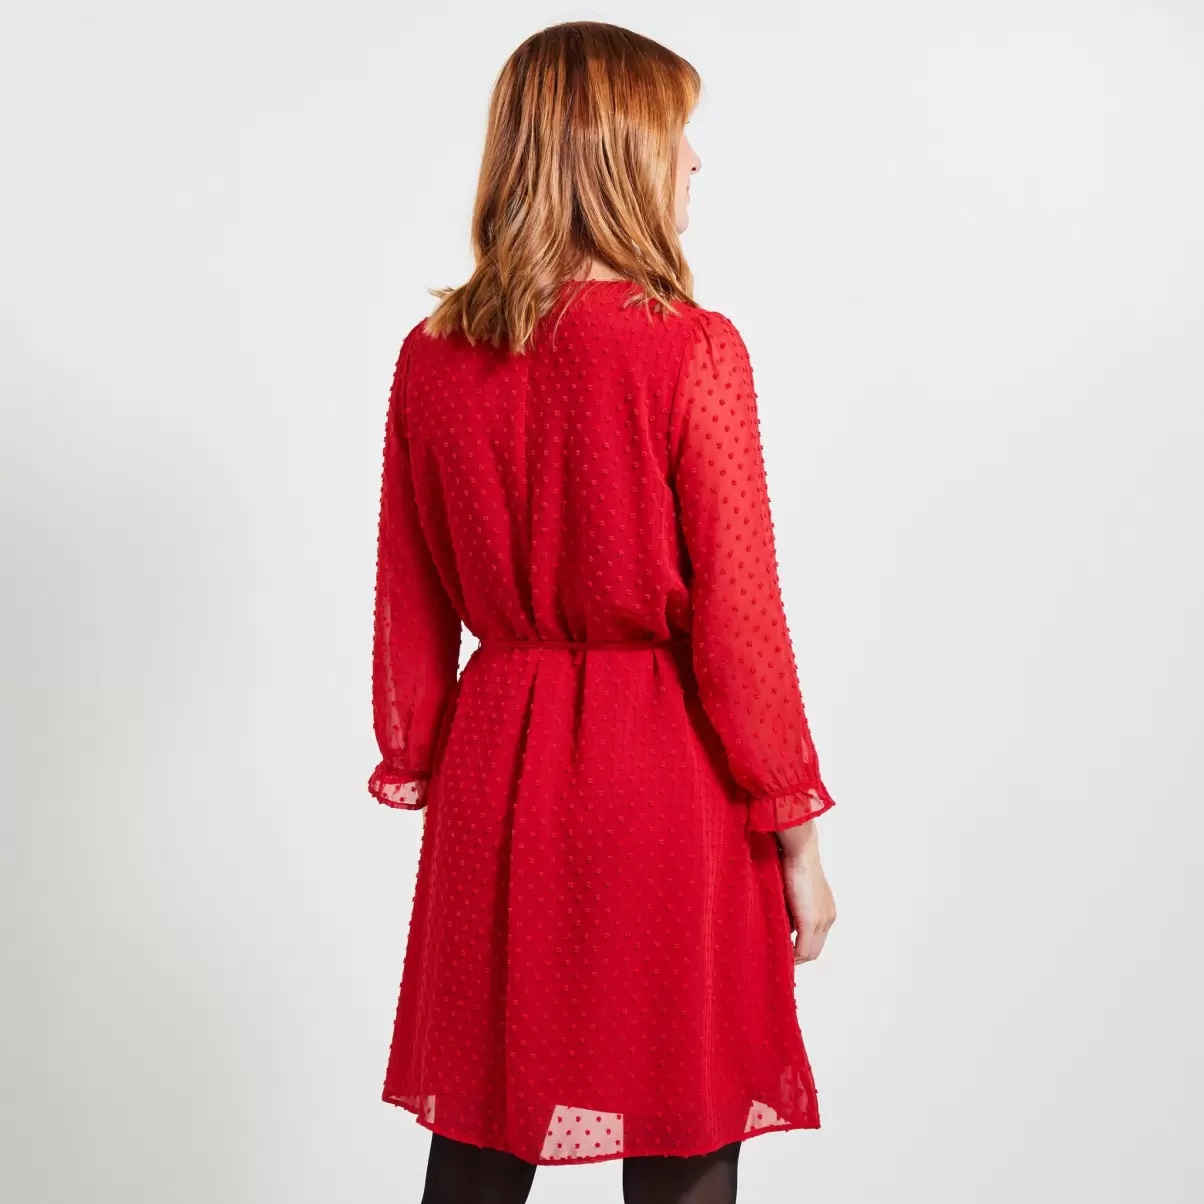 Robes Robe Plumetis Femme Innovant Grain De Malic Rouge Femme - 1